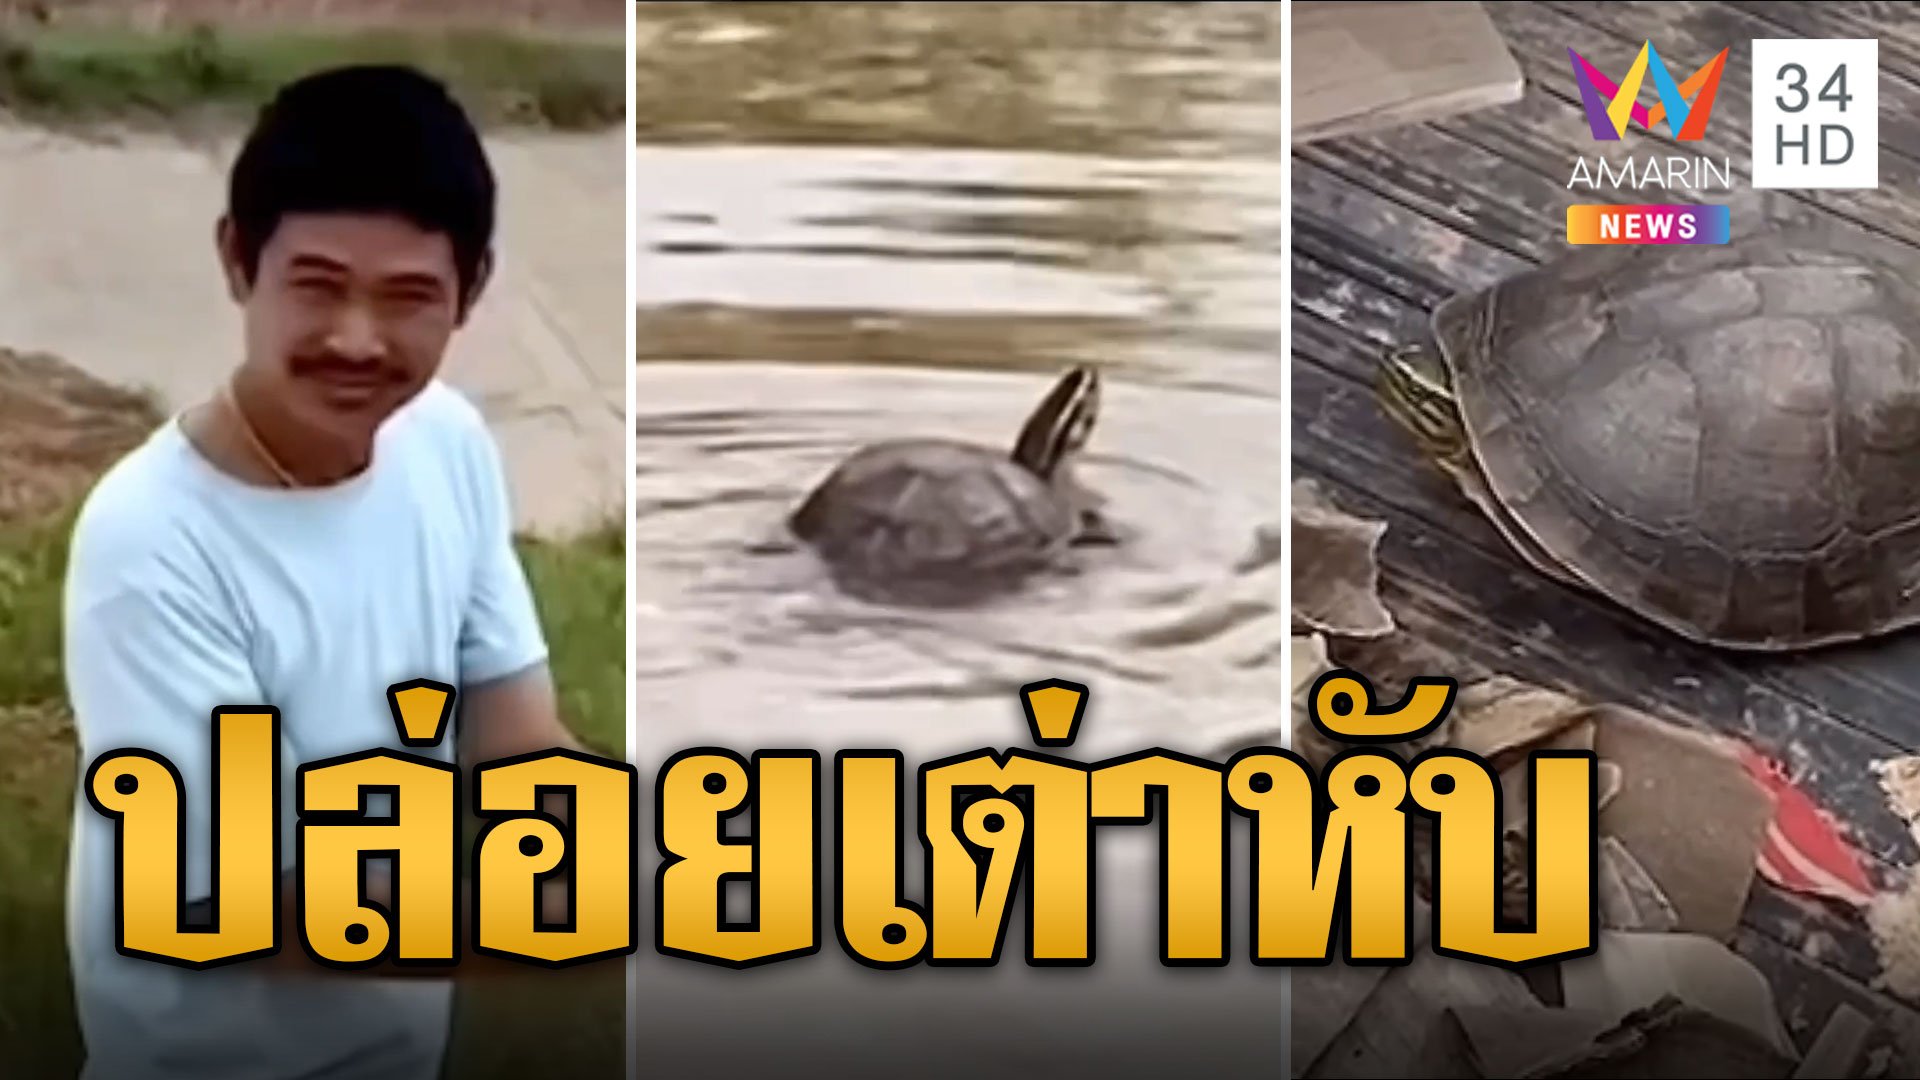 ส่องทะเบียนหนุ่มใจดี ช่วยเต่าหับเดินบนถนนปล่อยลงน้ำ | ข่าวอรุณอมรินทร์ | 28 พ.ค. 67 | AMARIN TVHD34